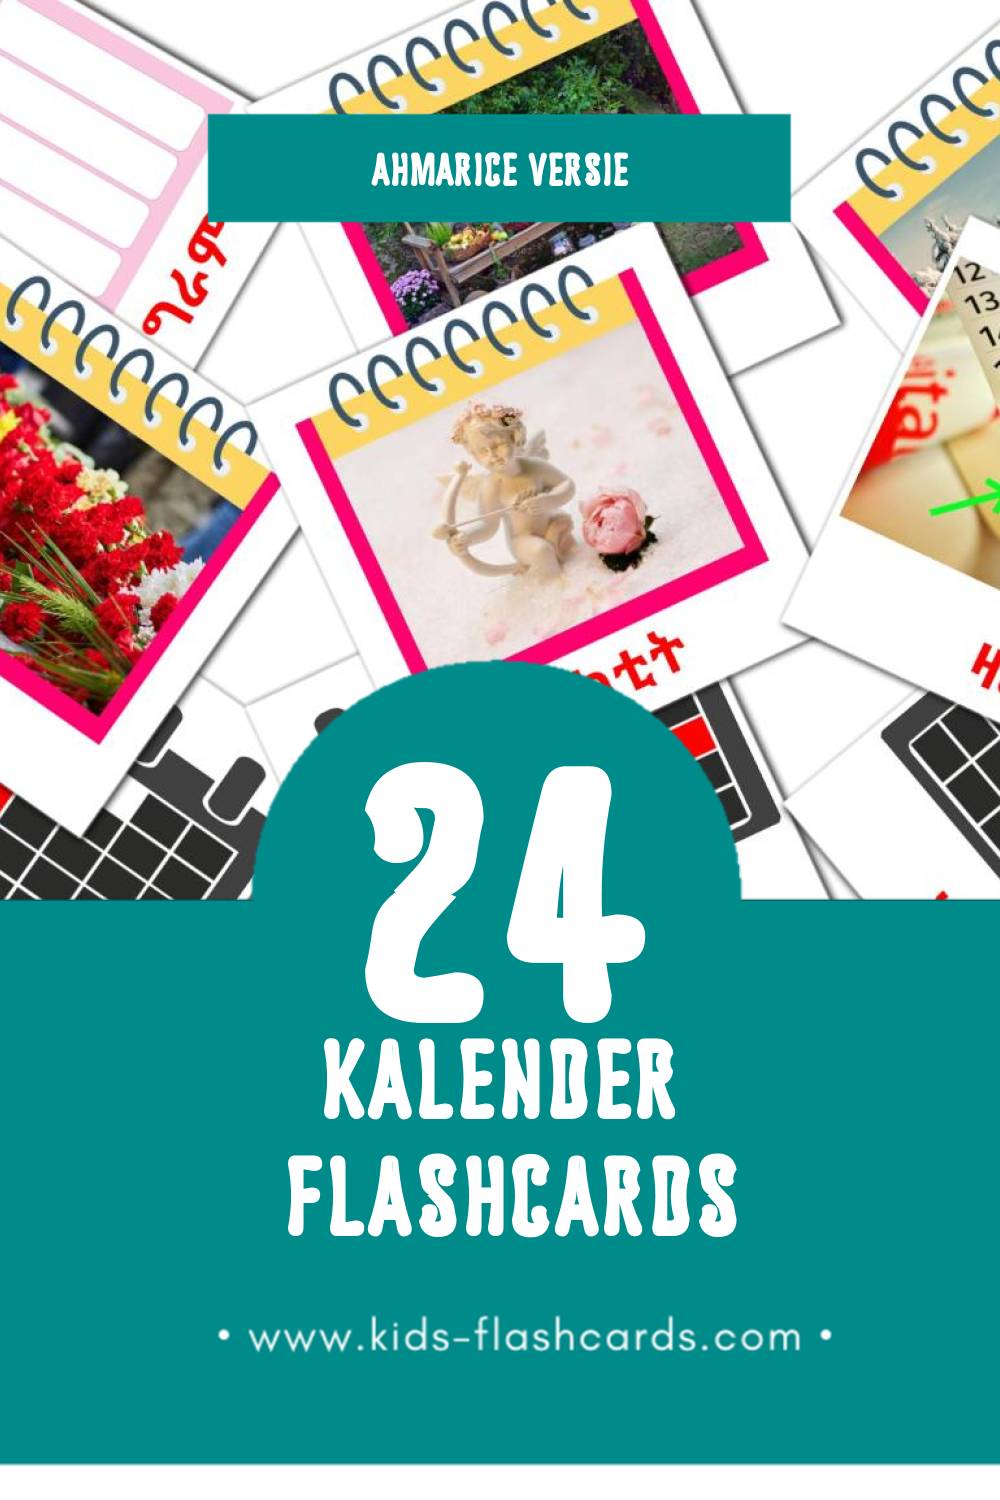 Visuele የቀንመቁጠሪያ  Flashcards voor Kleuters (24 kaarten in het Ahmaric)